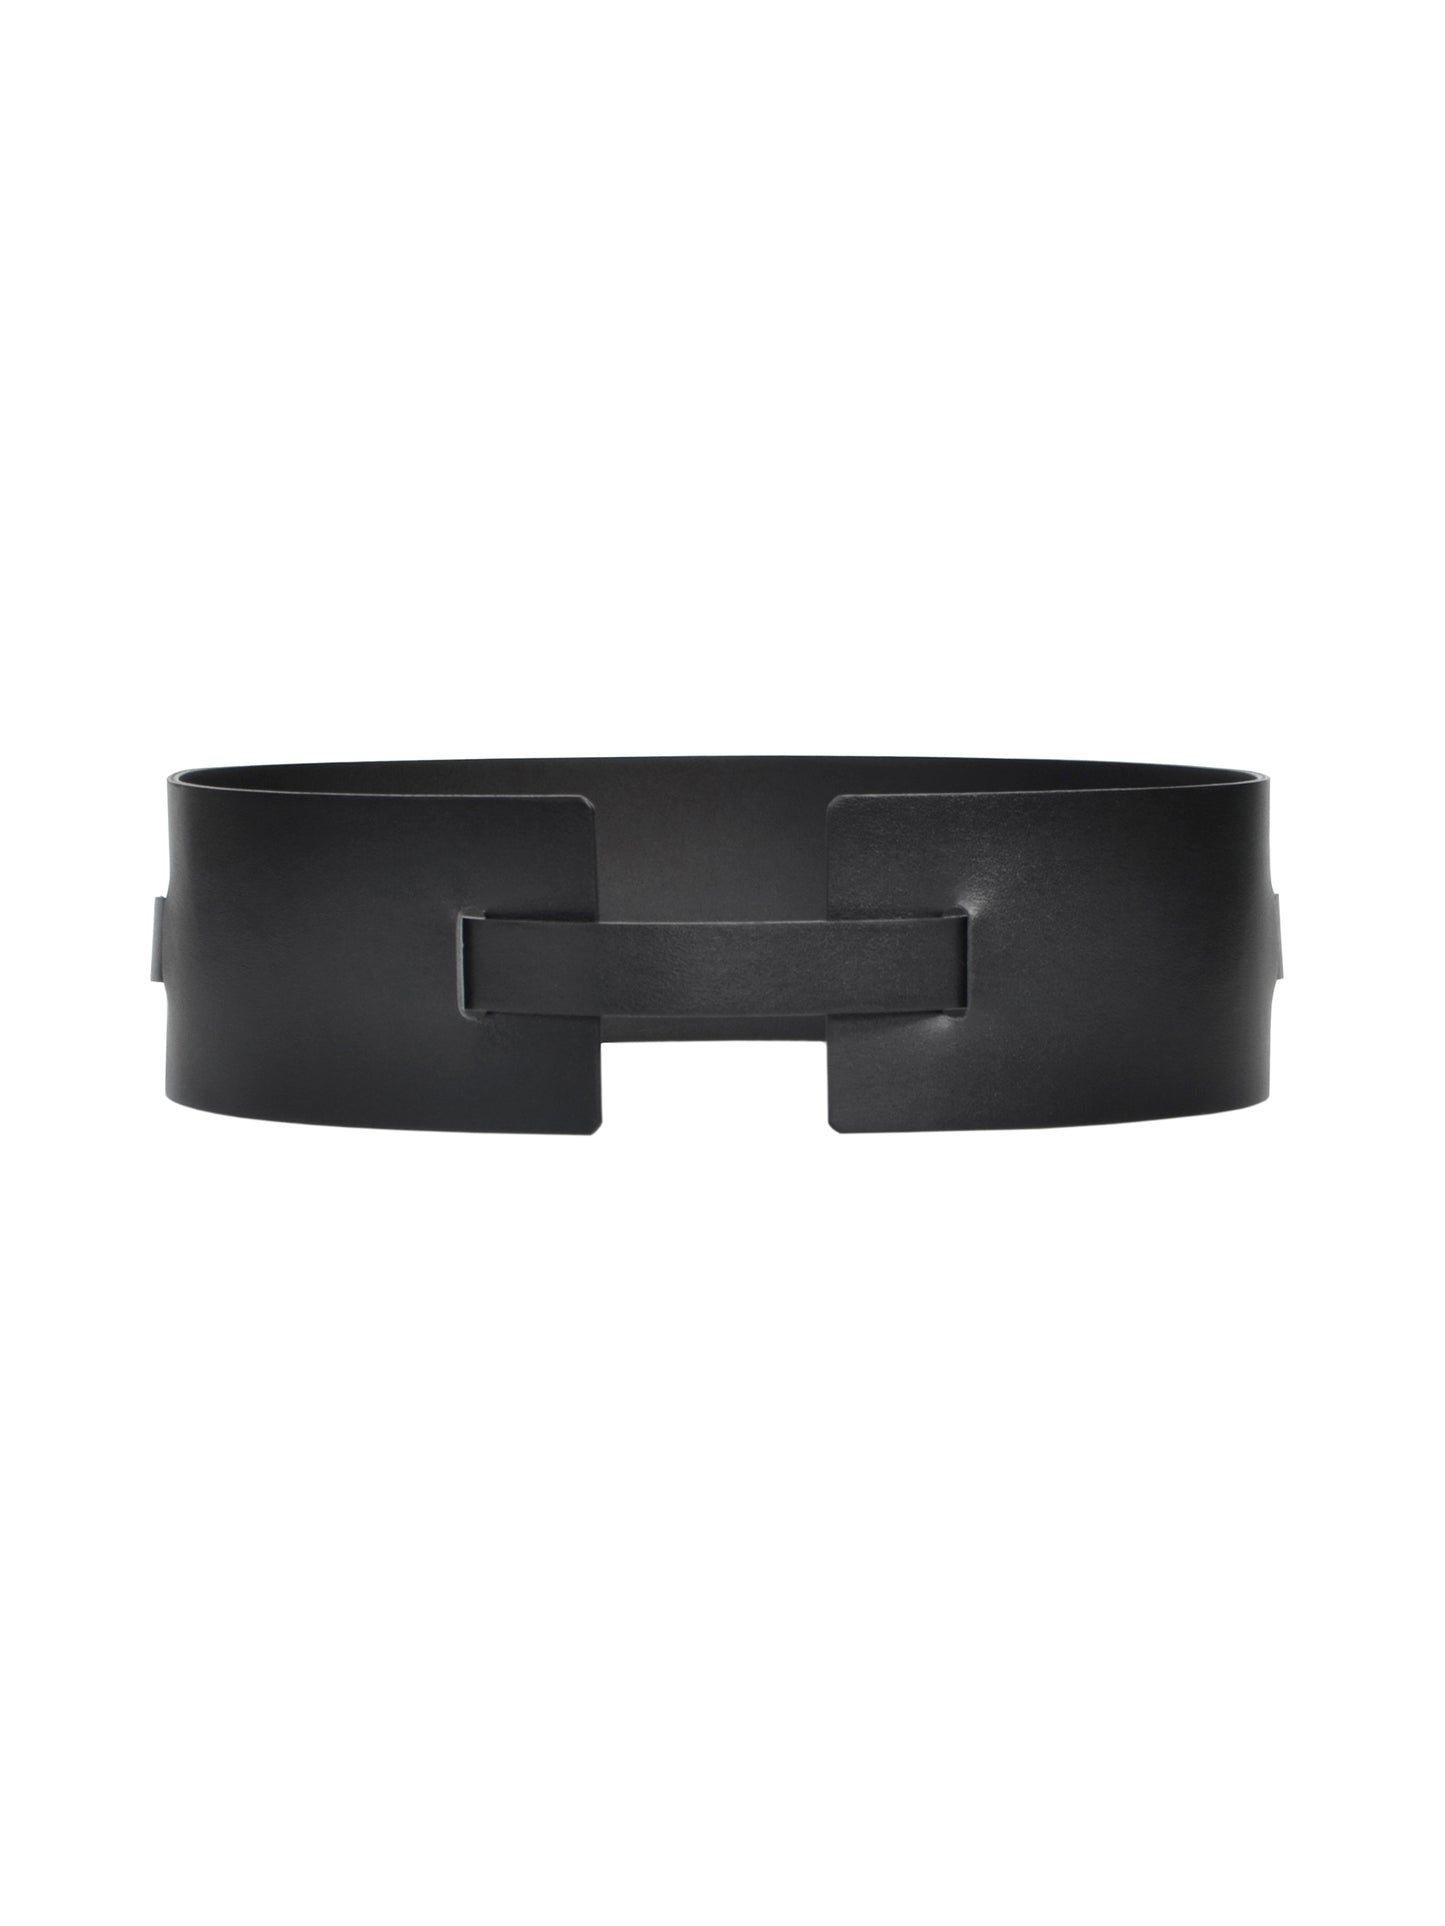 Back view of black waist cincher belt.